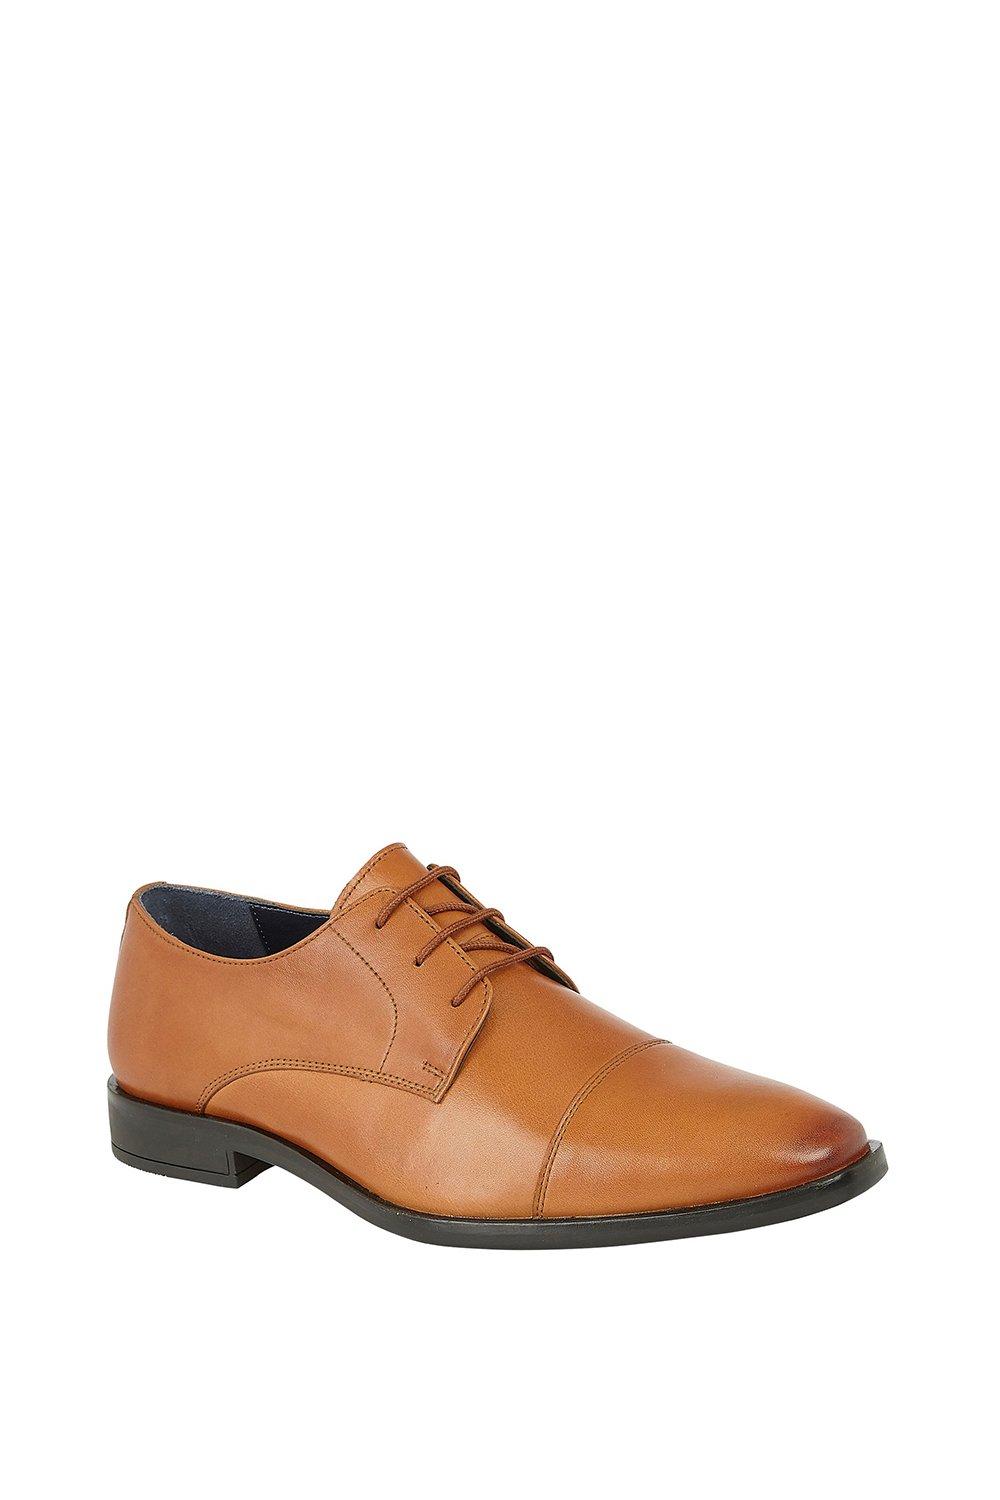 Кожаные туфли дерби Euston Lotus, коричневый красные свадебные туфли для мужчин итальянские брендовые элегантные туфли для мужчин модные вечерние туфли для мужчин формальные туфли